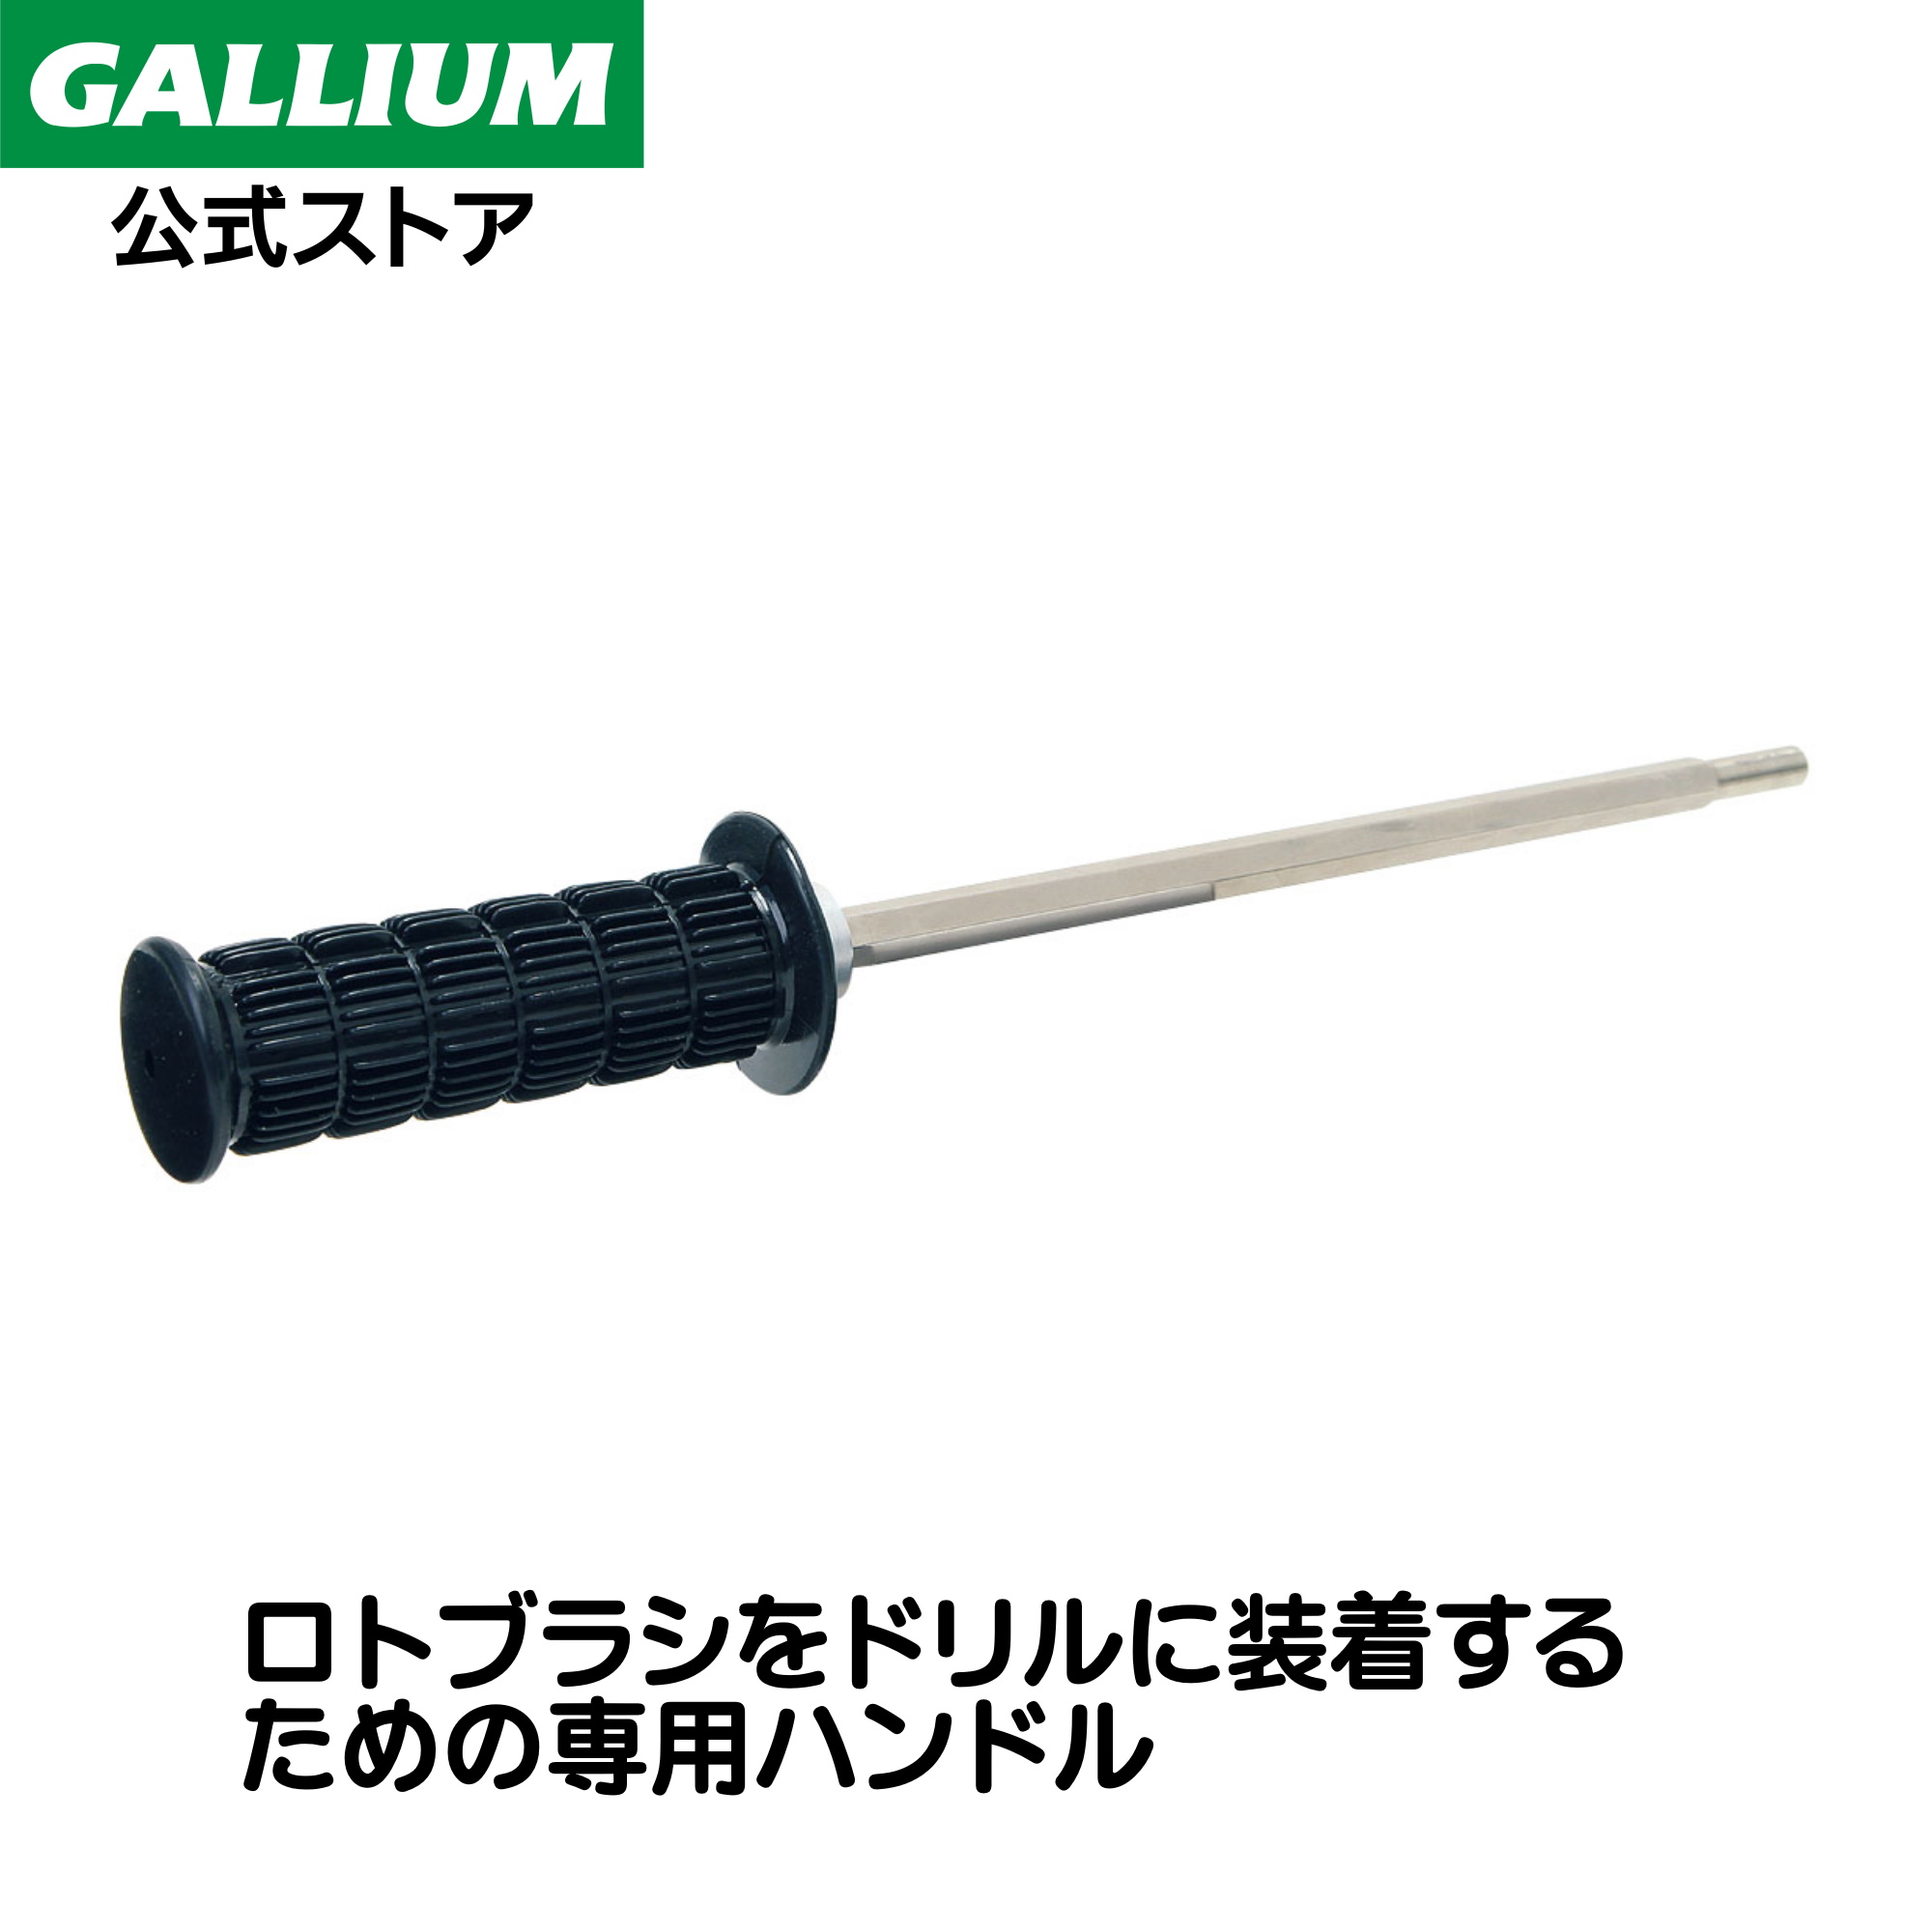 ガリウム☴ GALLIUM スキー用品専門タナベスポーツ - 通販 - PayPay